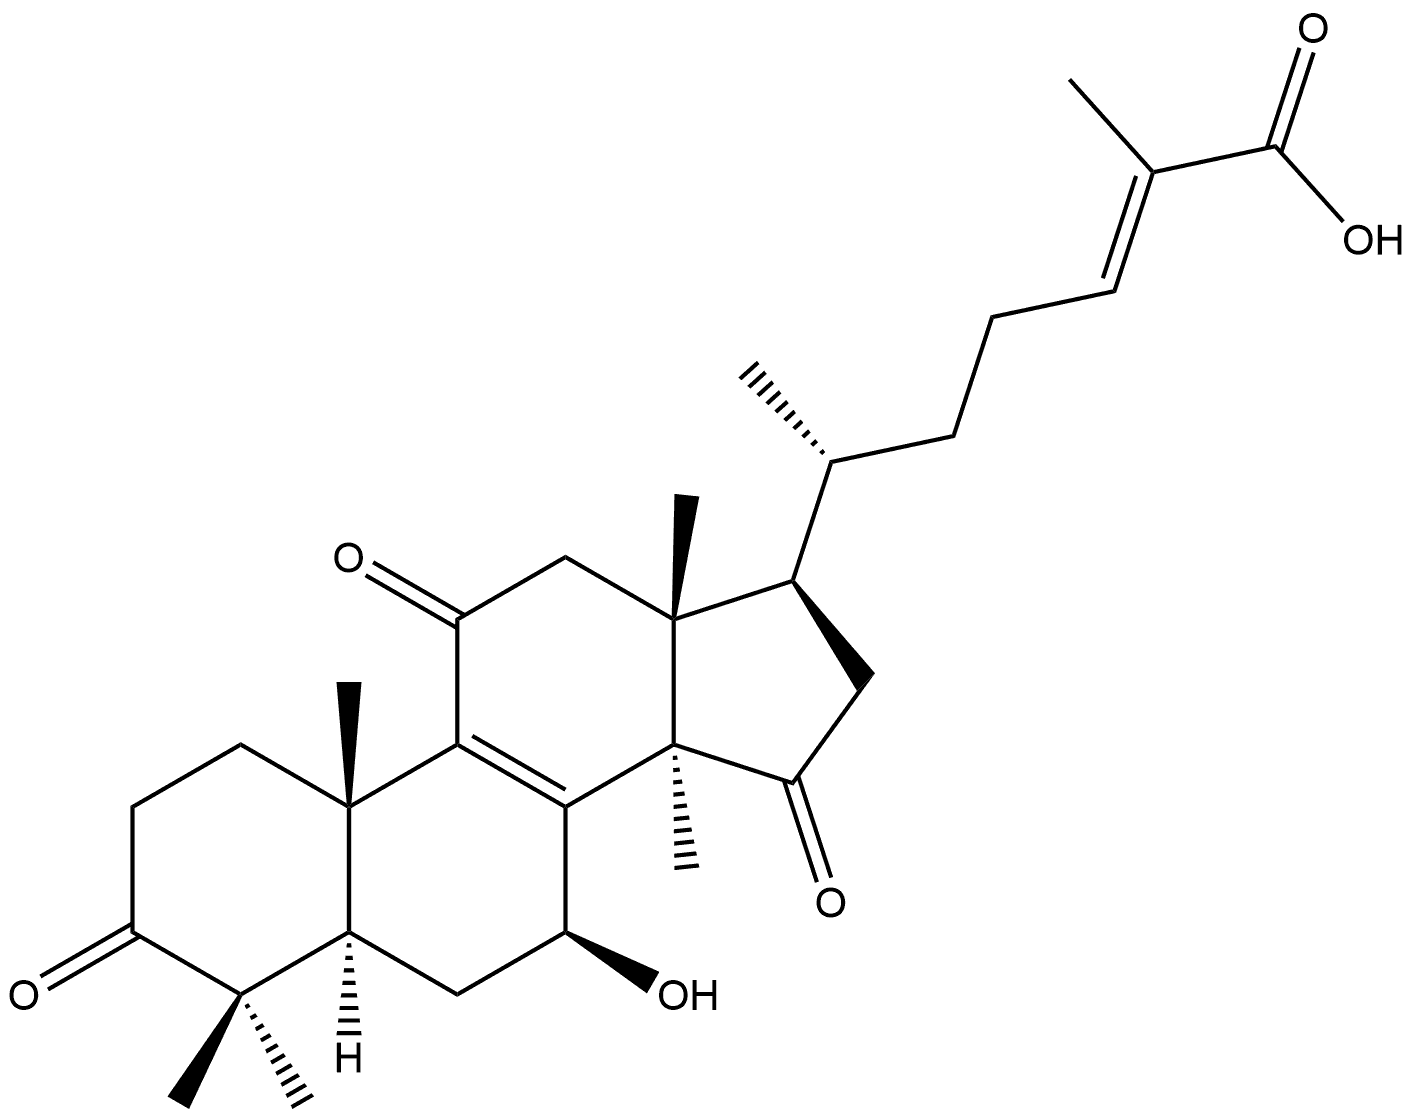 Lanosta-8,24-dien-26-oic acid, 7-hydroxy-3,11,15-trioxo-, (7β,24E)- Structure